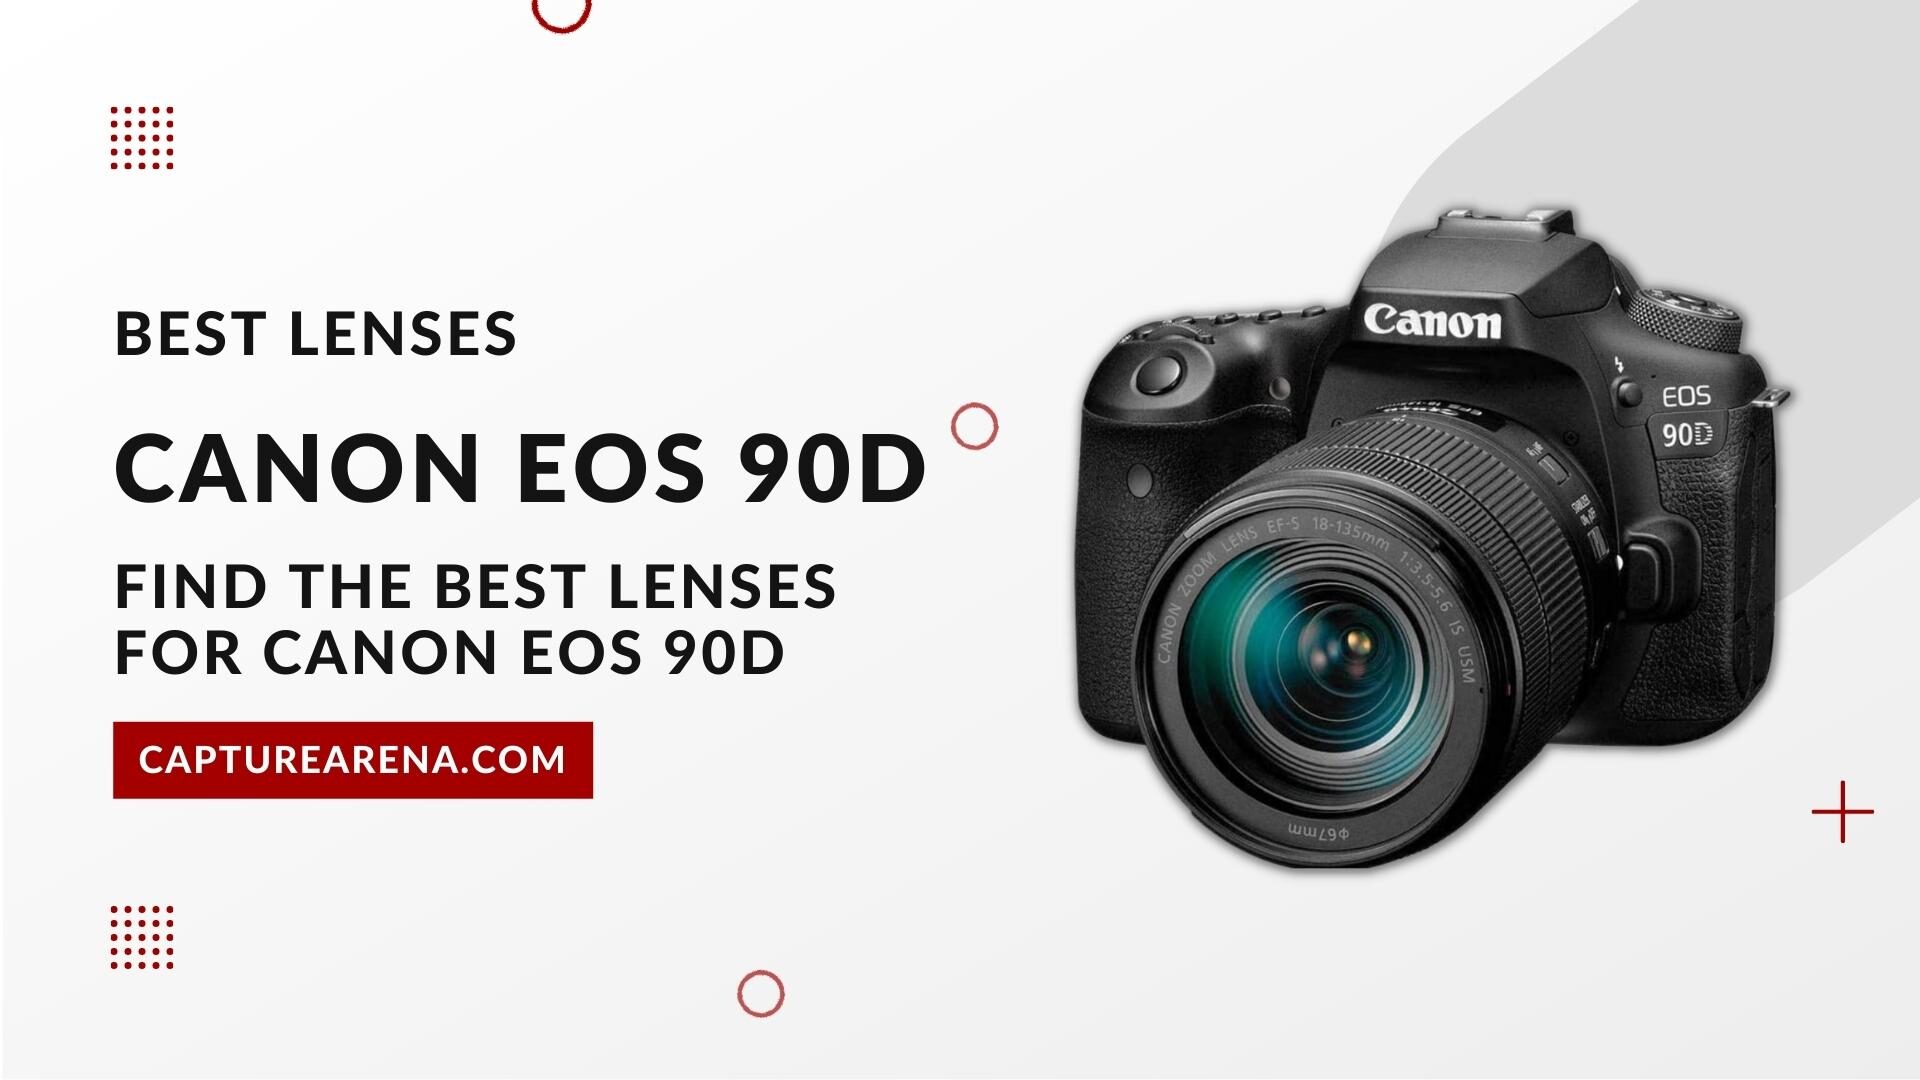 Canon EOS 90D Lenses